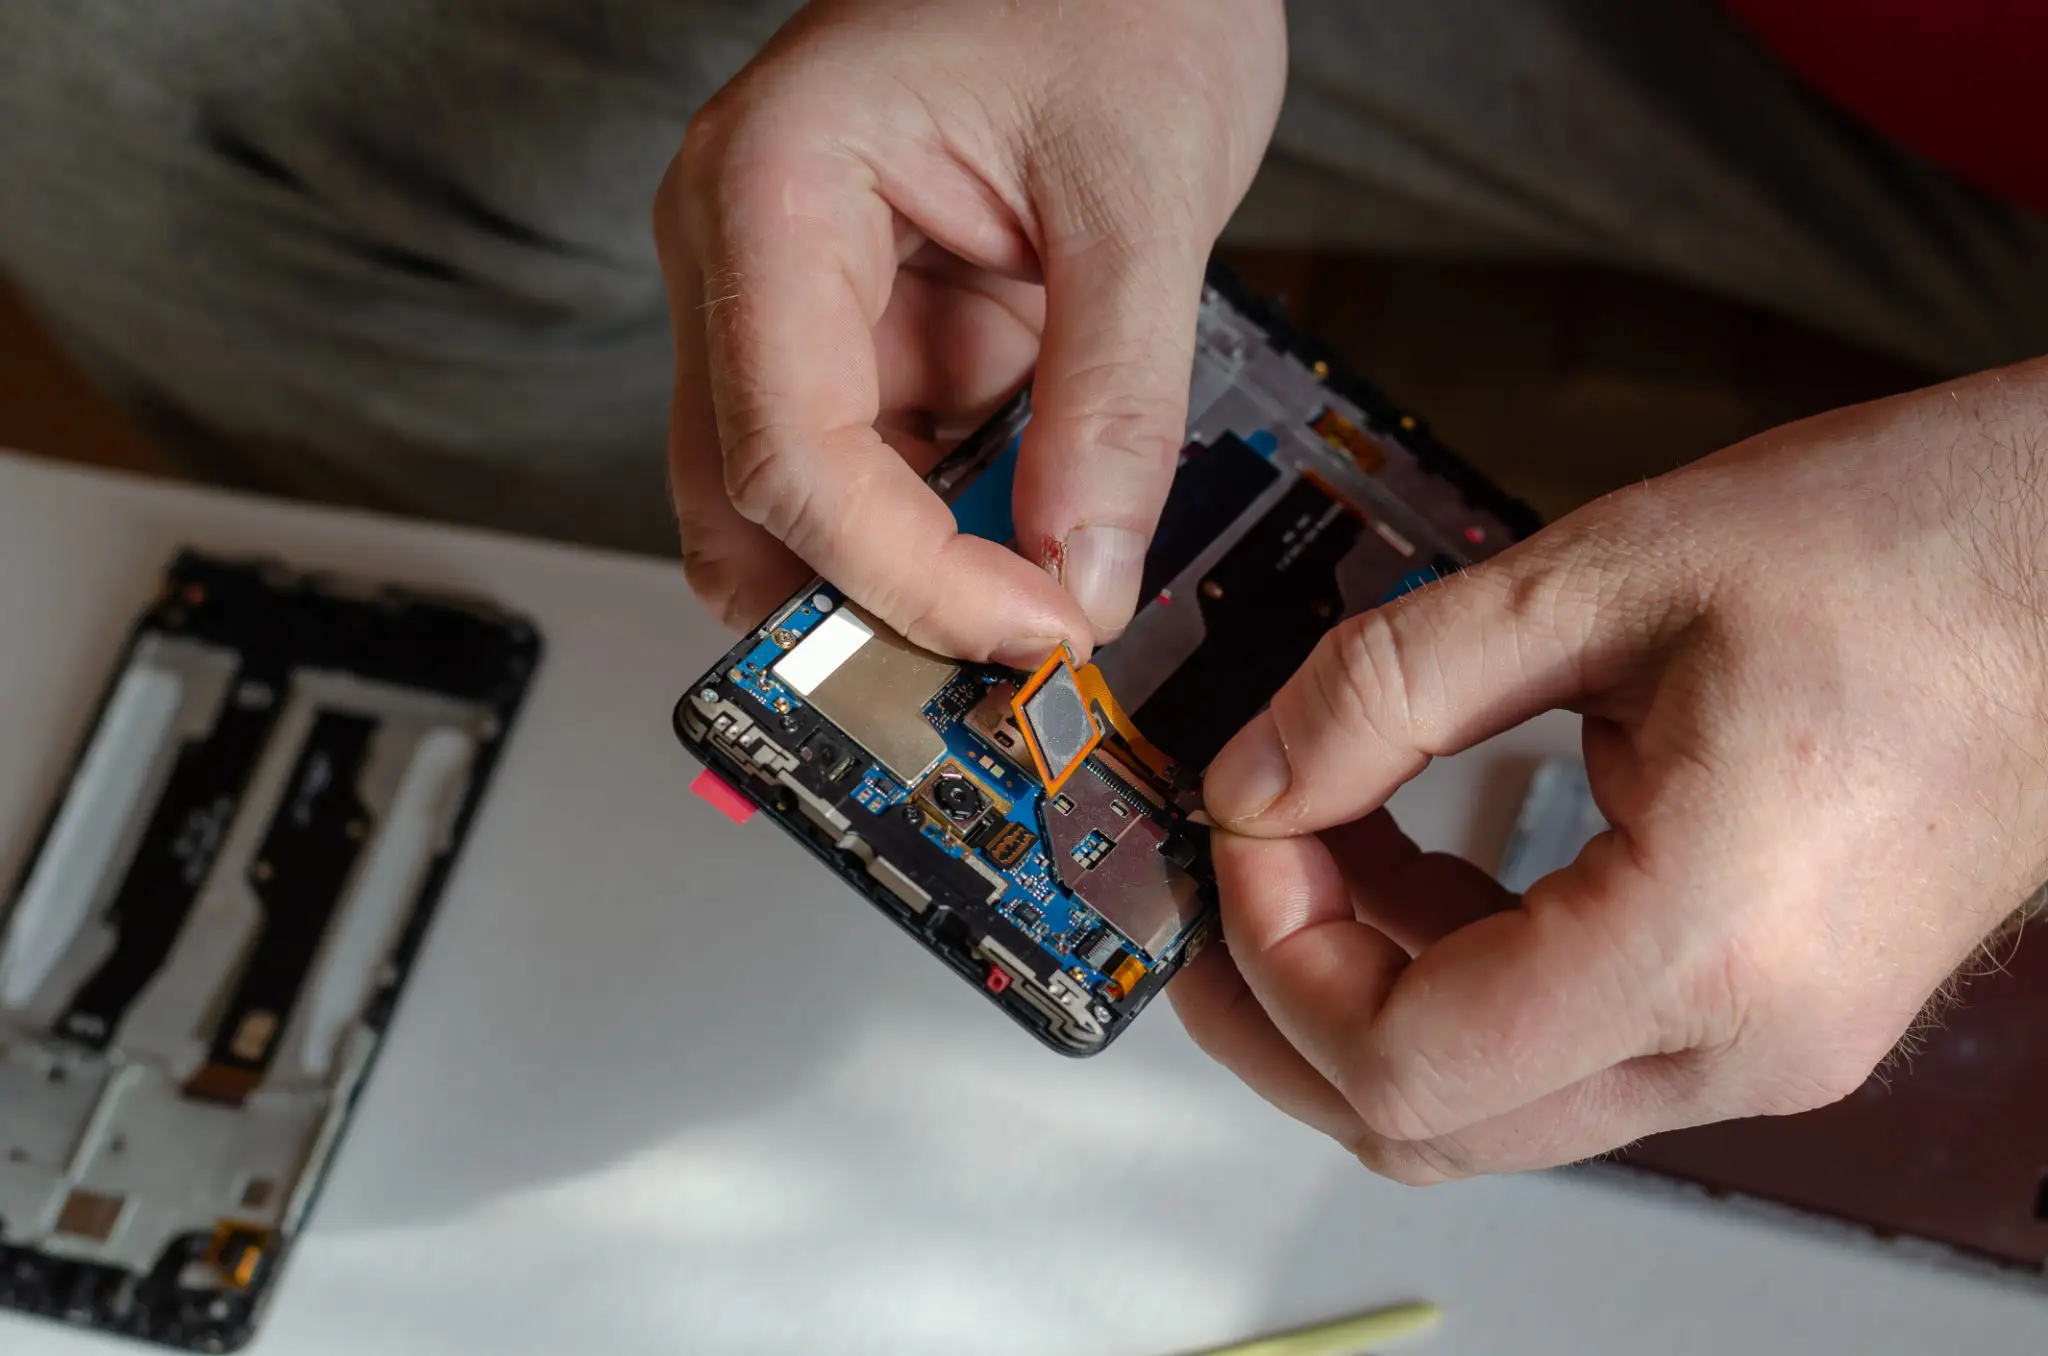 Repair of smartphones concept. A man uninstalls a fingerprint se